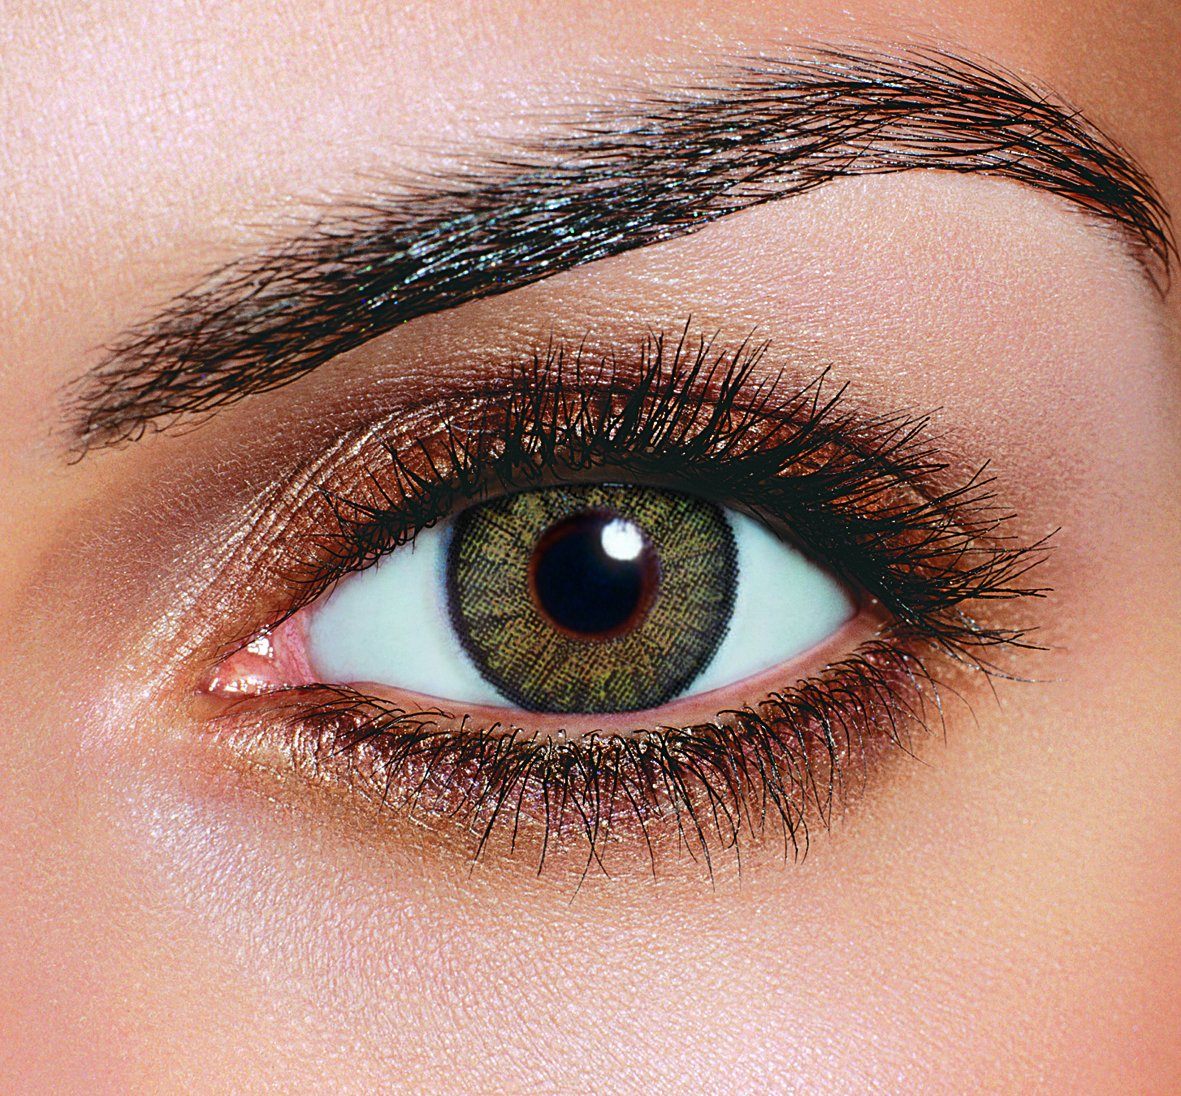 Best Eye Makeup For Hazel Eyes Hazel Eyes Best Eyeshadow And Makeup For Hazel Eyes